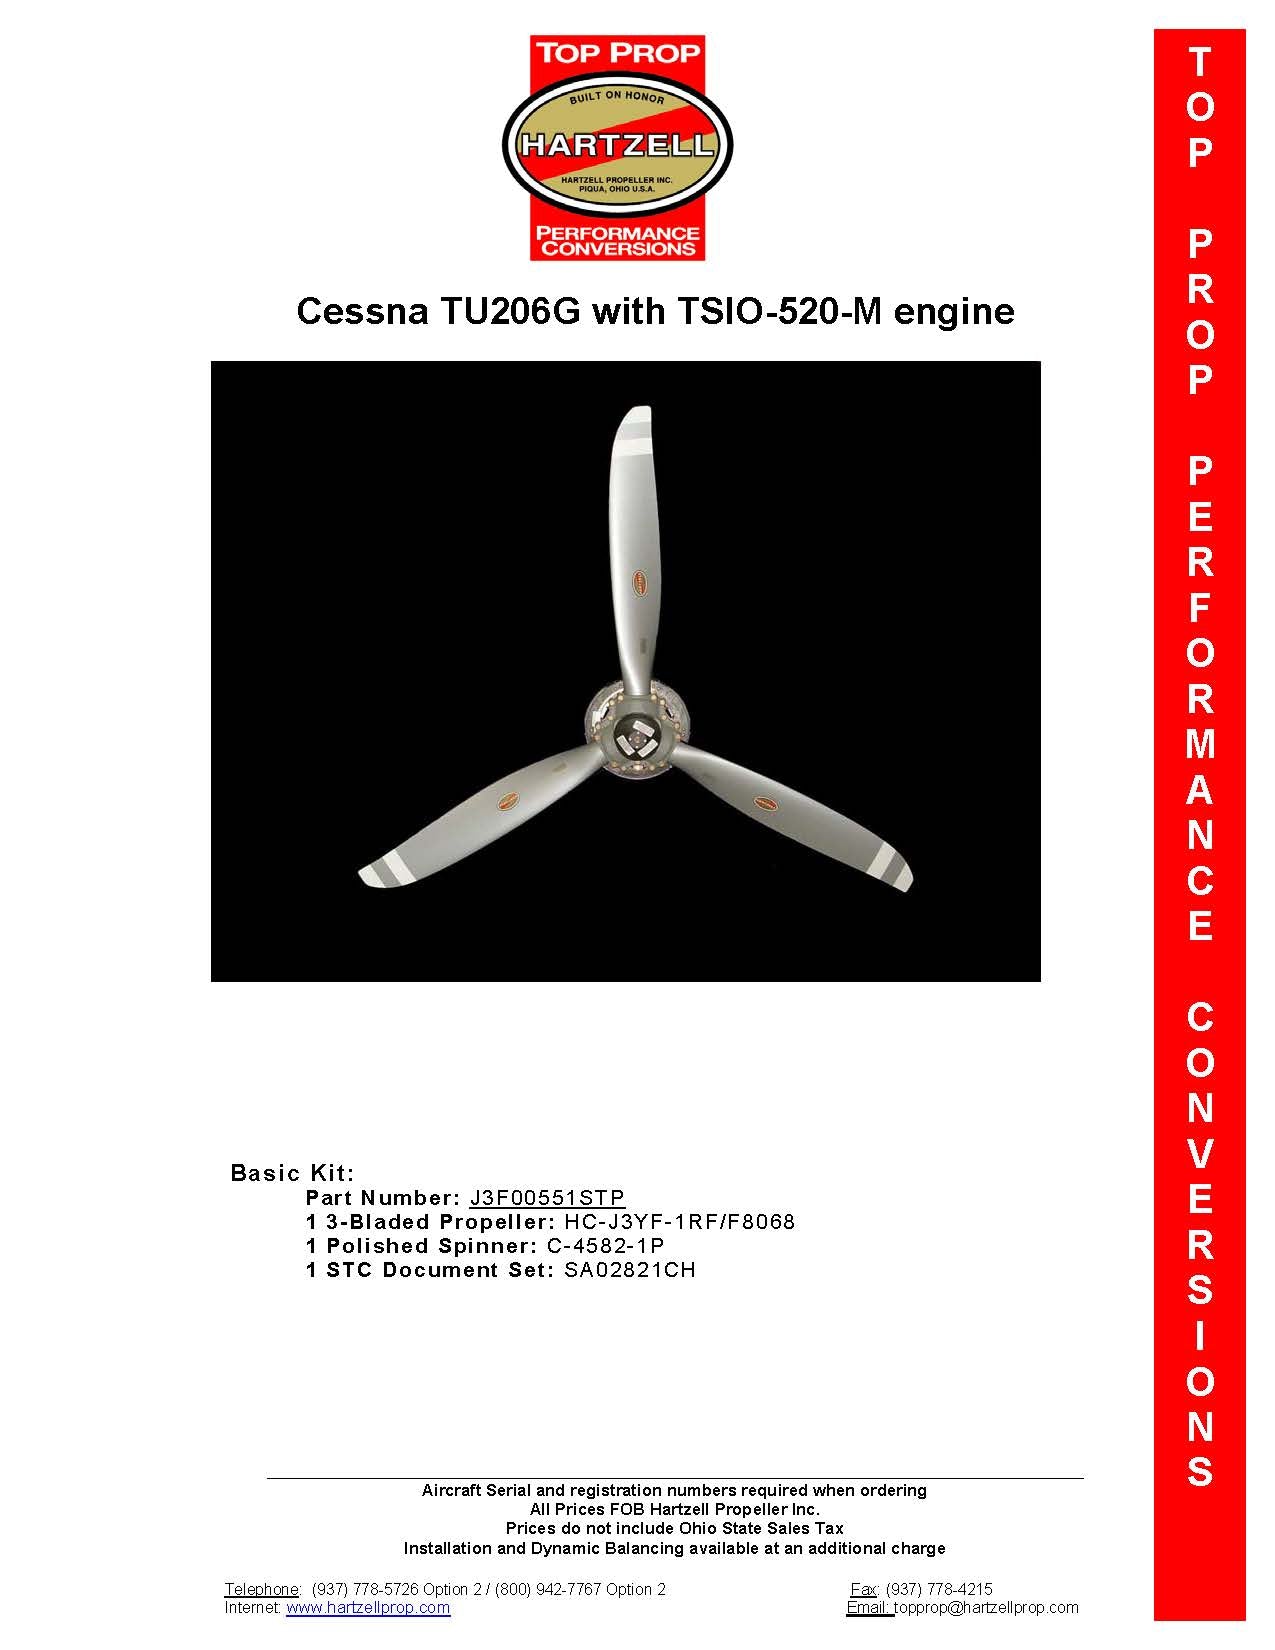 CESSNA-TU206G-SA02821CH-J3F00551STP-PAGE-1